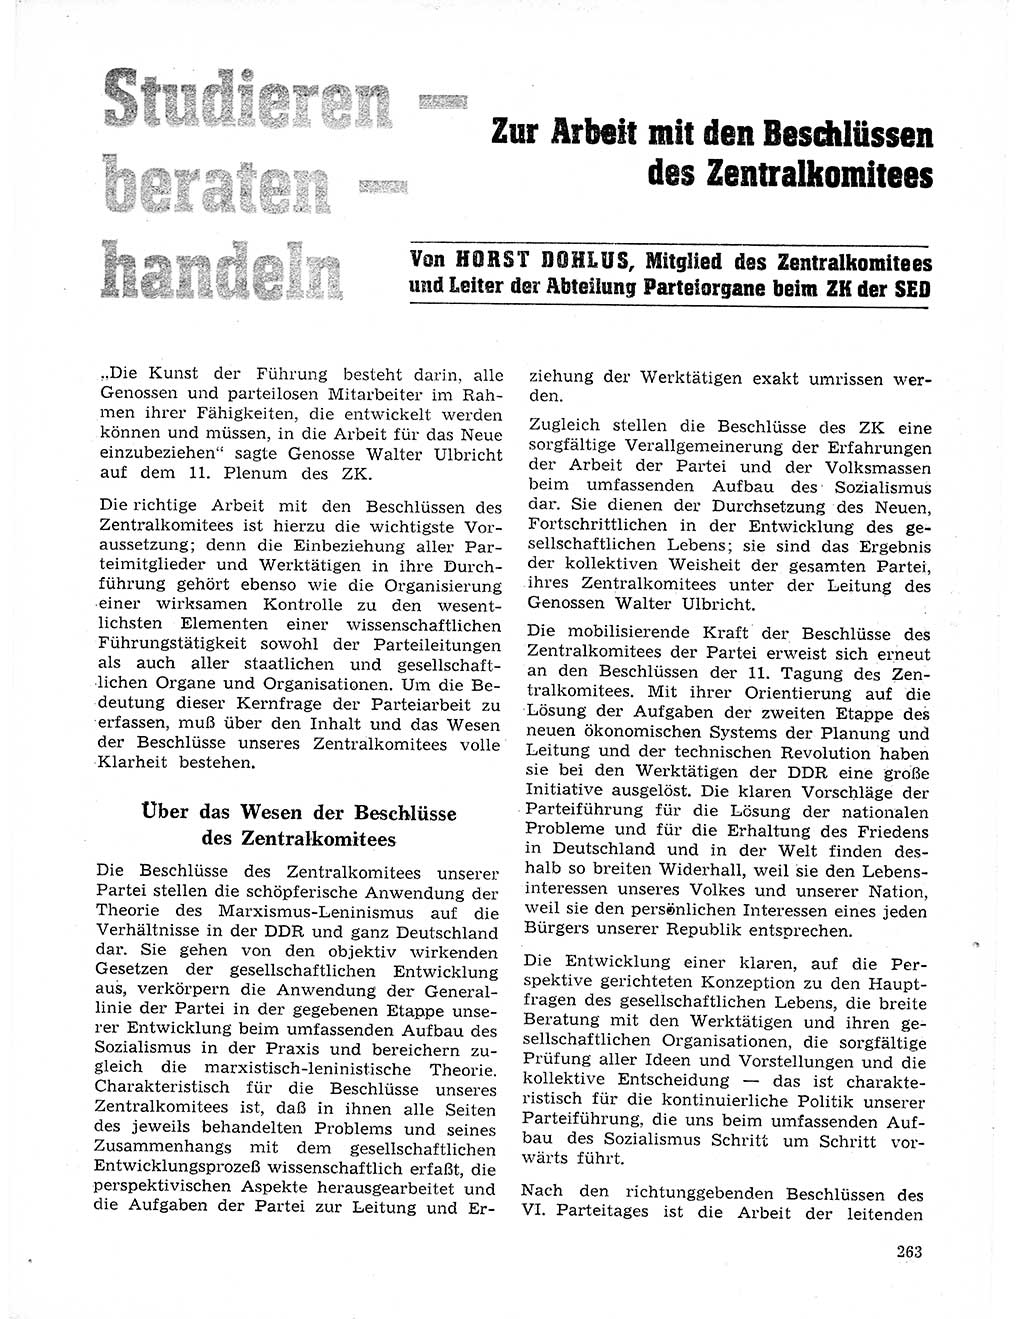 Neuer Weg (NW), Organ des Zentralkomitees (ZK) der SED (Sozialistische Einheitspartei Deutschlands) für Fragen des Parteilebens, 21. Jahrgang [Deutsche Demokratische Republik (DDR)] 1966, Seite 263 (NW ZK SED DDR 1966, S. 263)